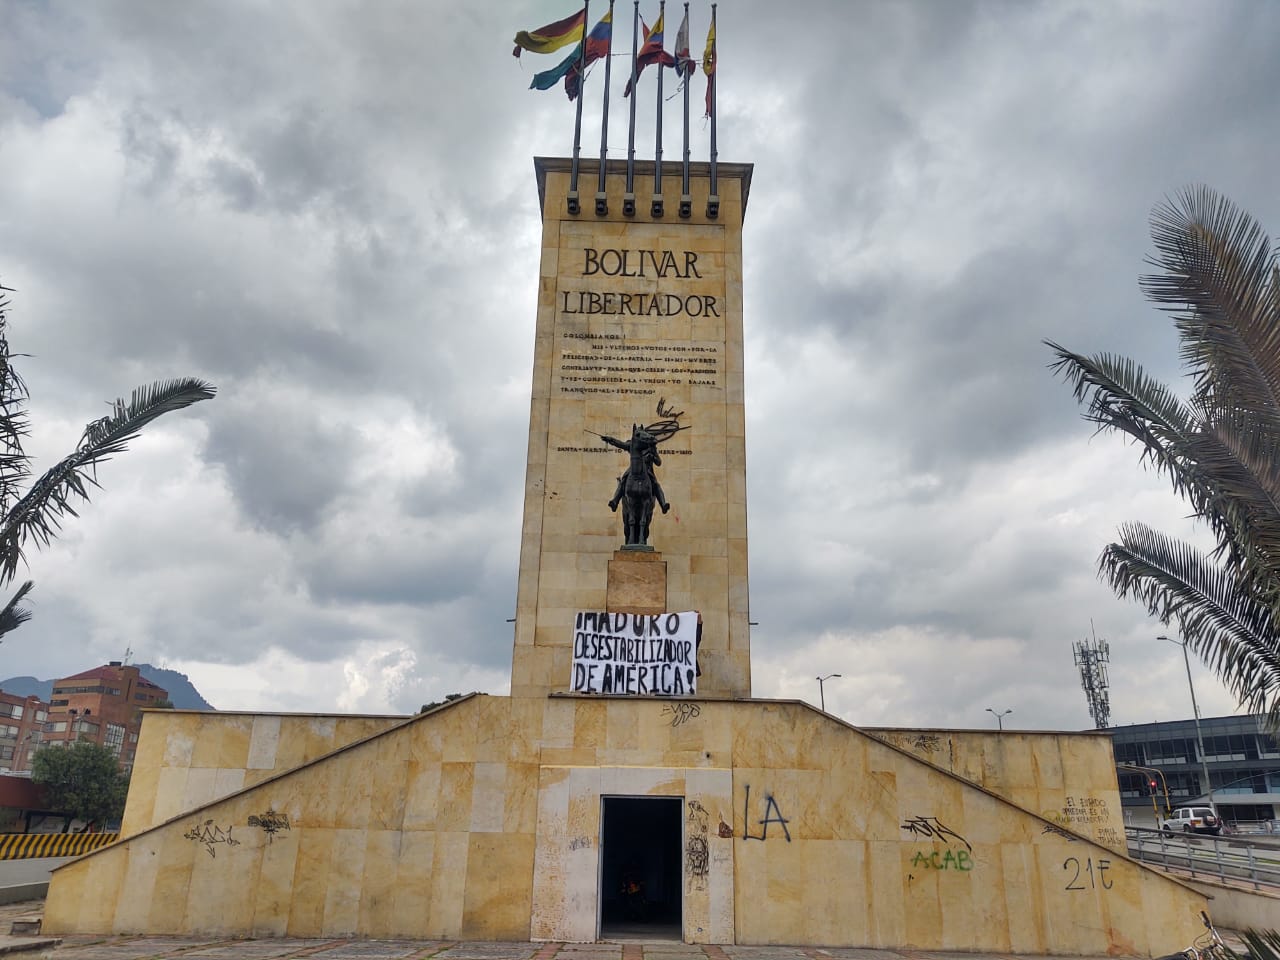 Despliegan pancarta contra el régimen de Maduro en histórico monumento en Bogotá (FOTOS)